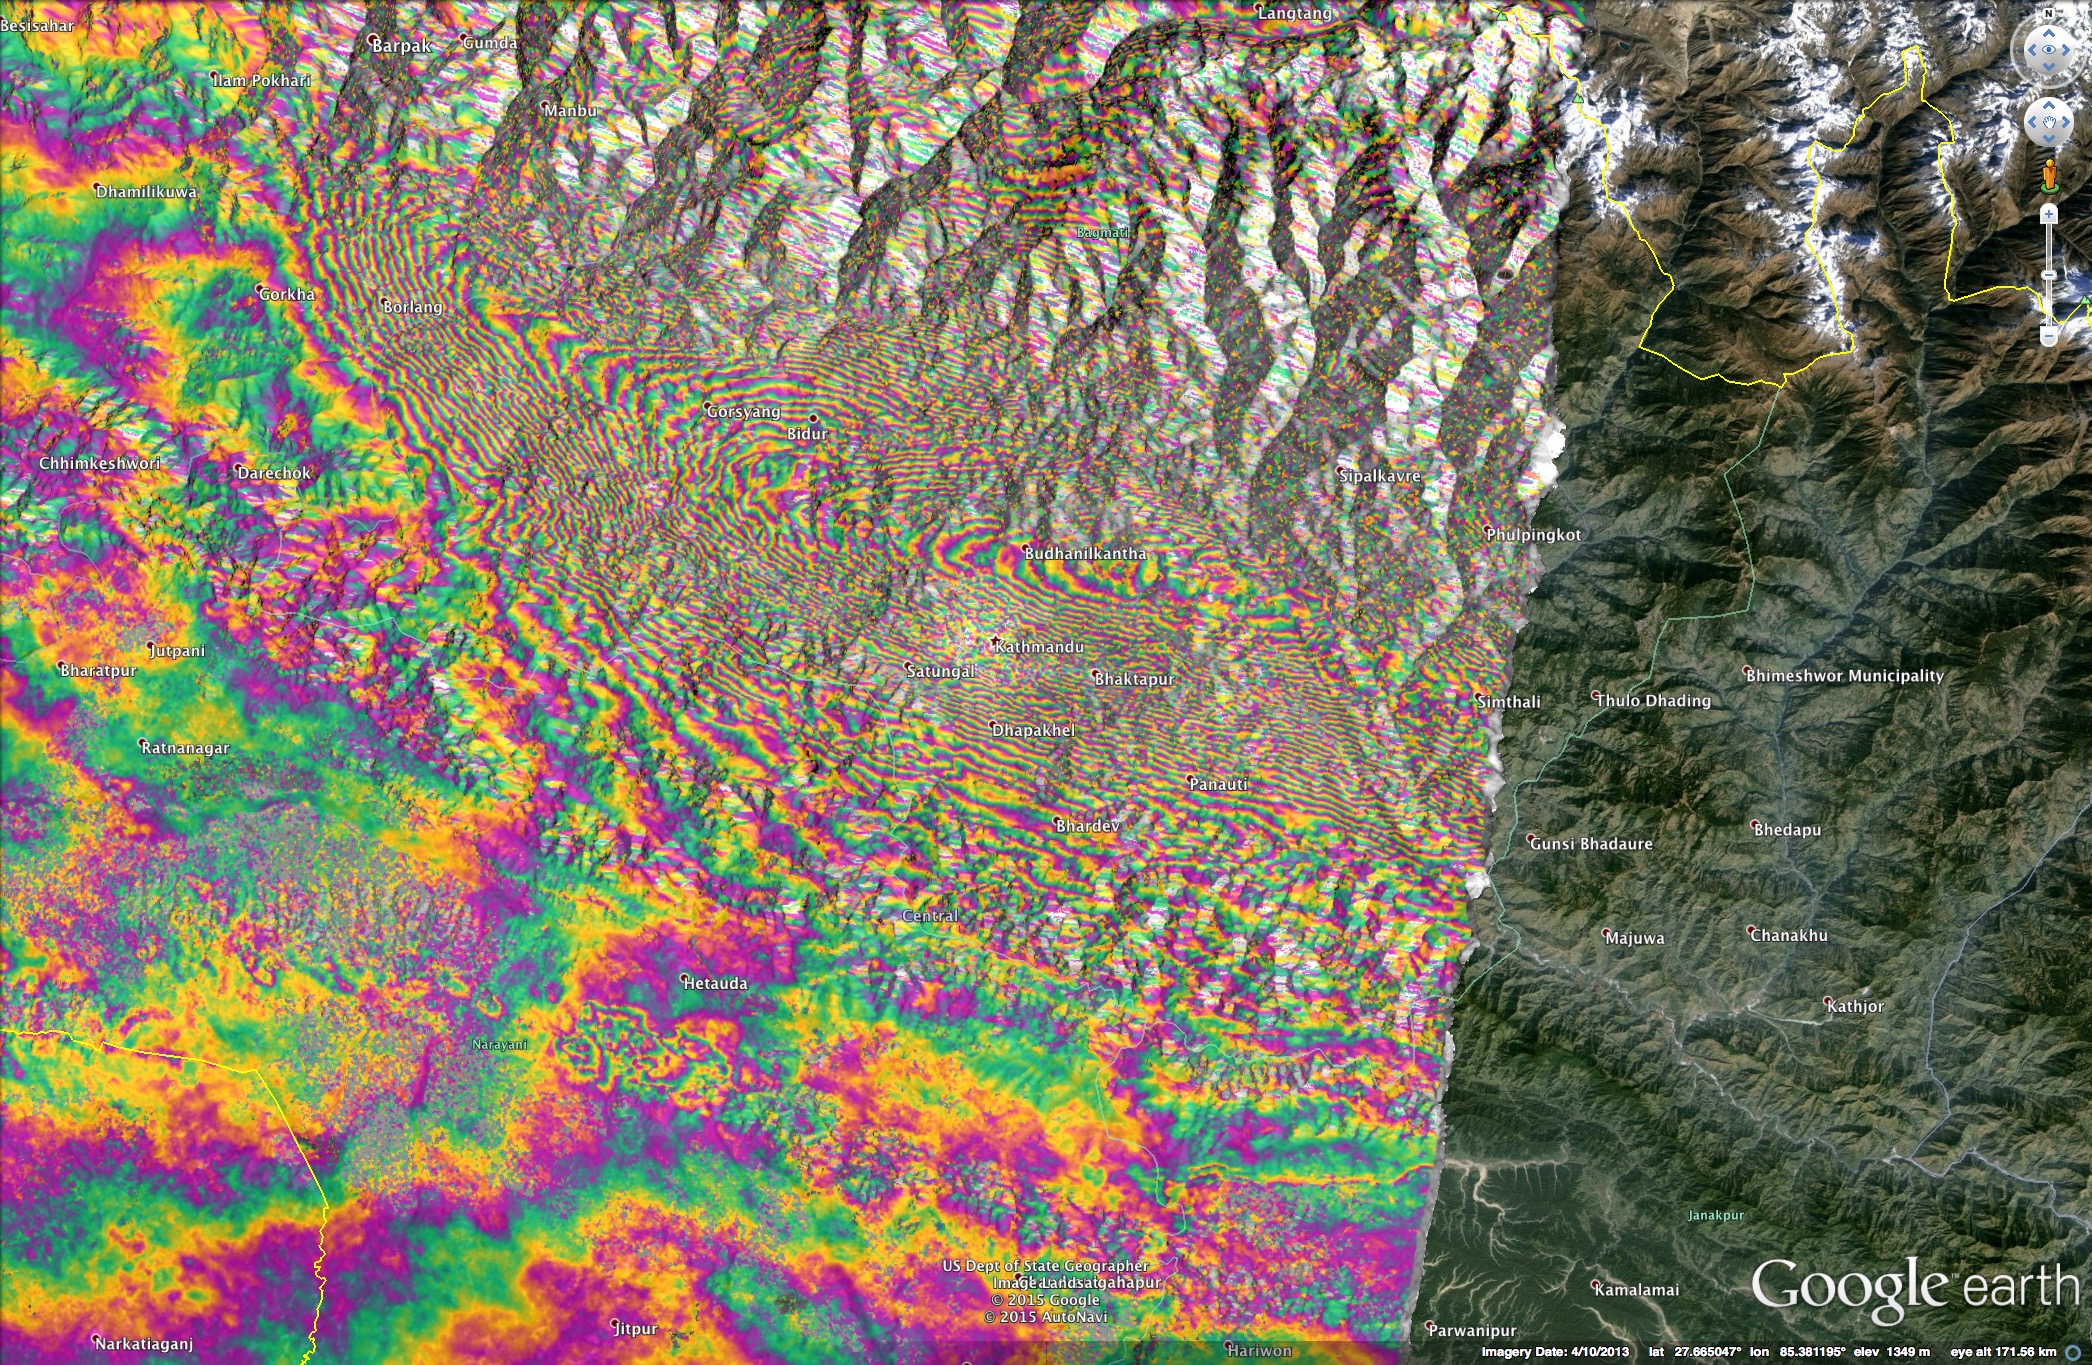 Спутниковое радиолокационное изображение изменение земной коры при землетрясении магнитудой 7,8 в Непале 25 апреля 2015 года. На этом фото каждая радужная "волна" означает вертикальное изменение положения земной коры примерно на 30 сантиметров